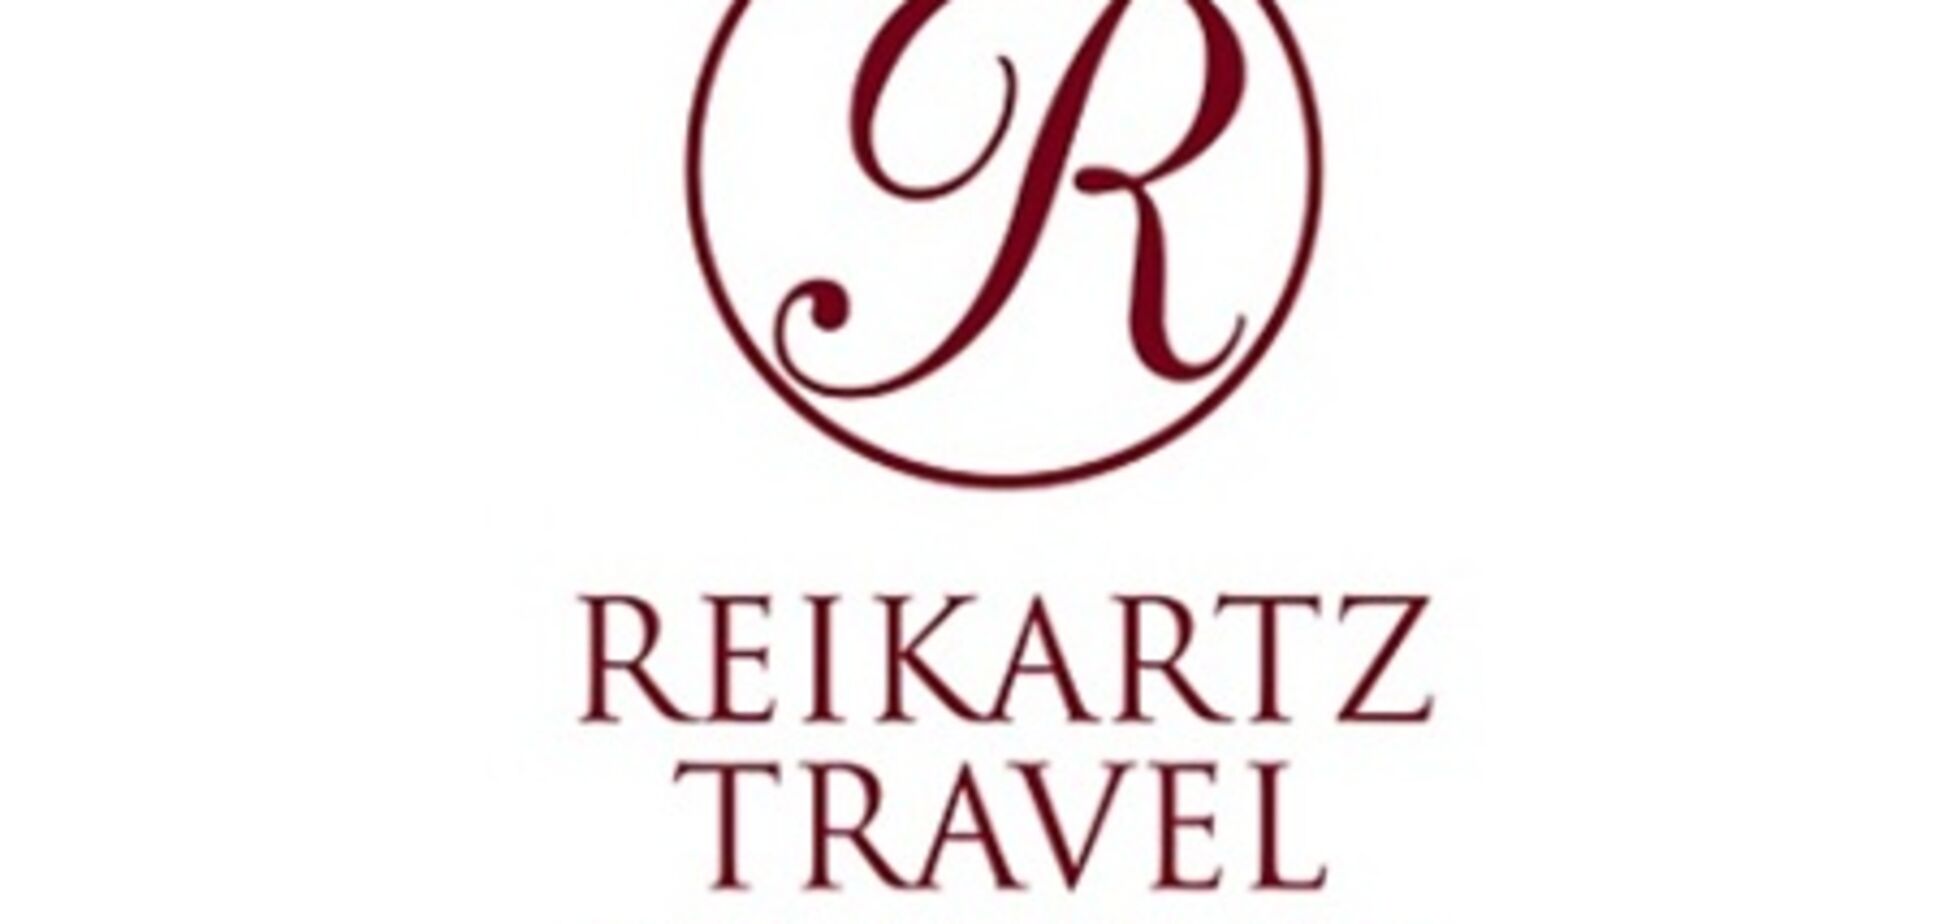 Отель Reikartz открывается в Житомире